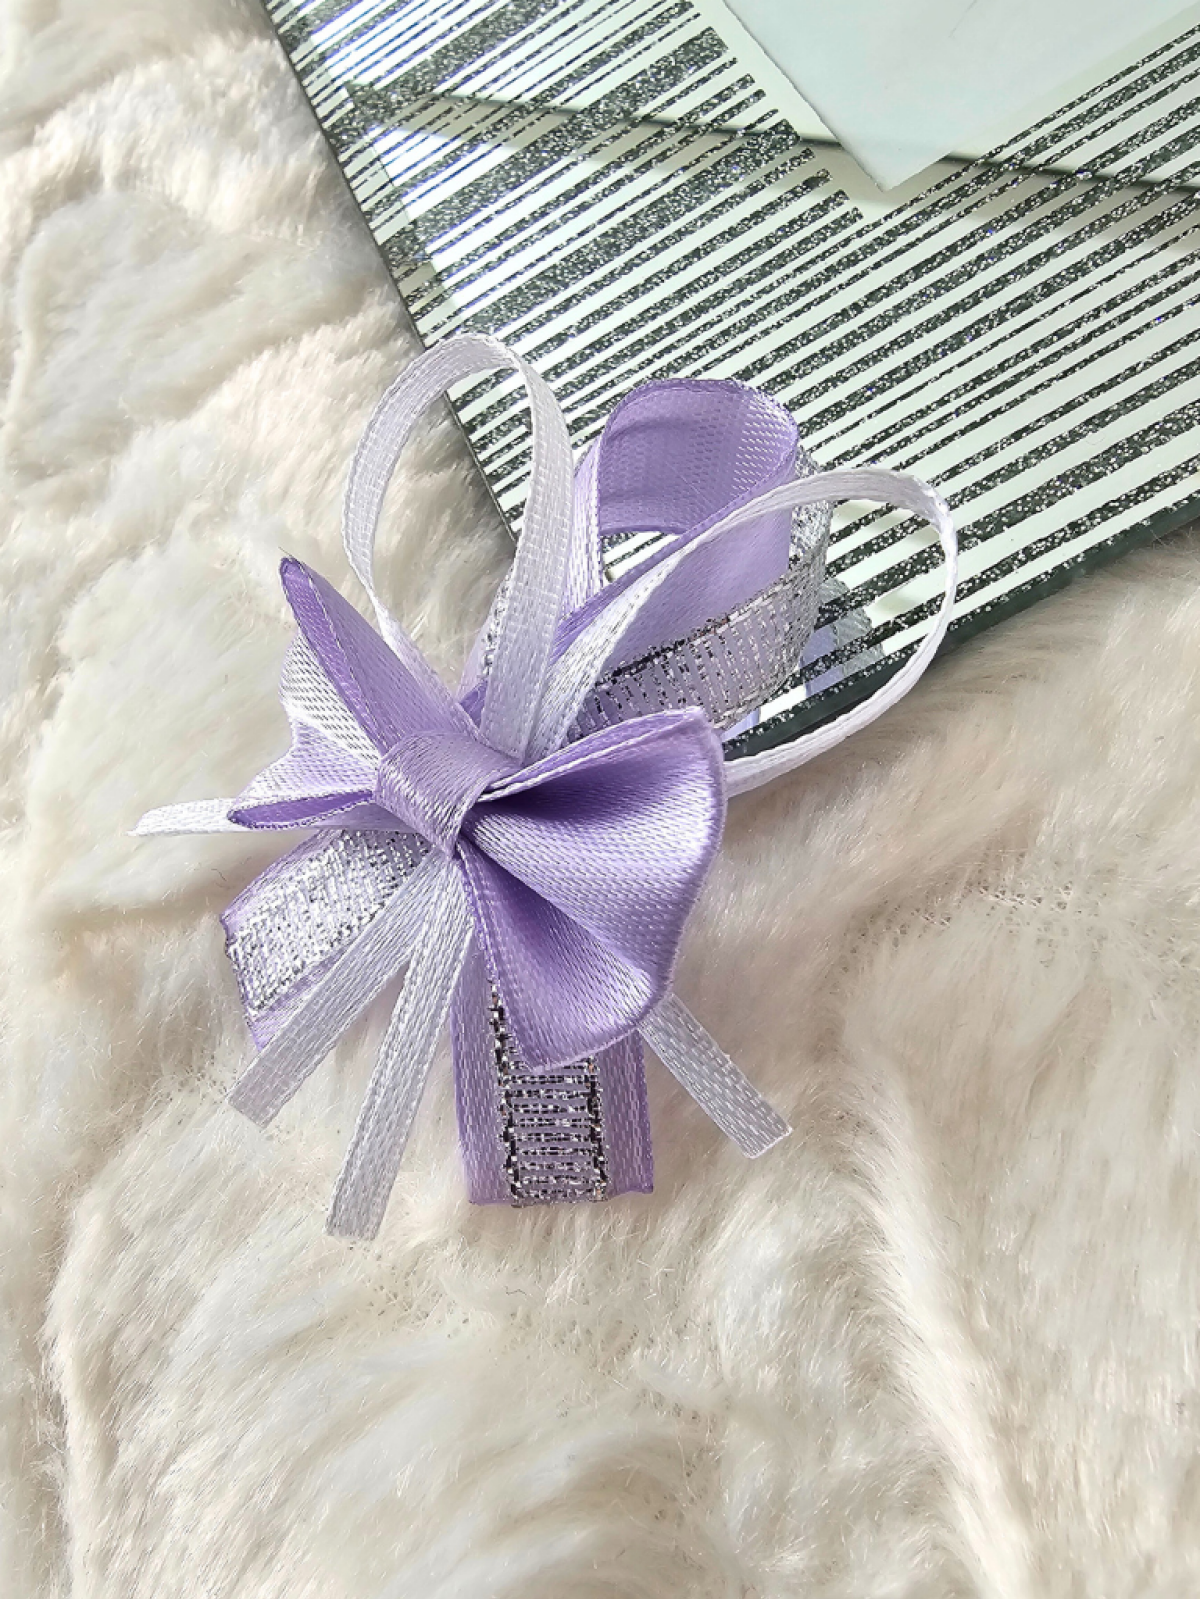 Przypinki dla gości weselnych + fiolet lawend wrzosowy srebrne b